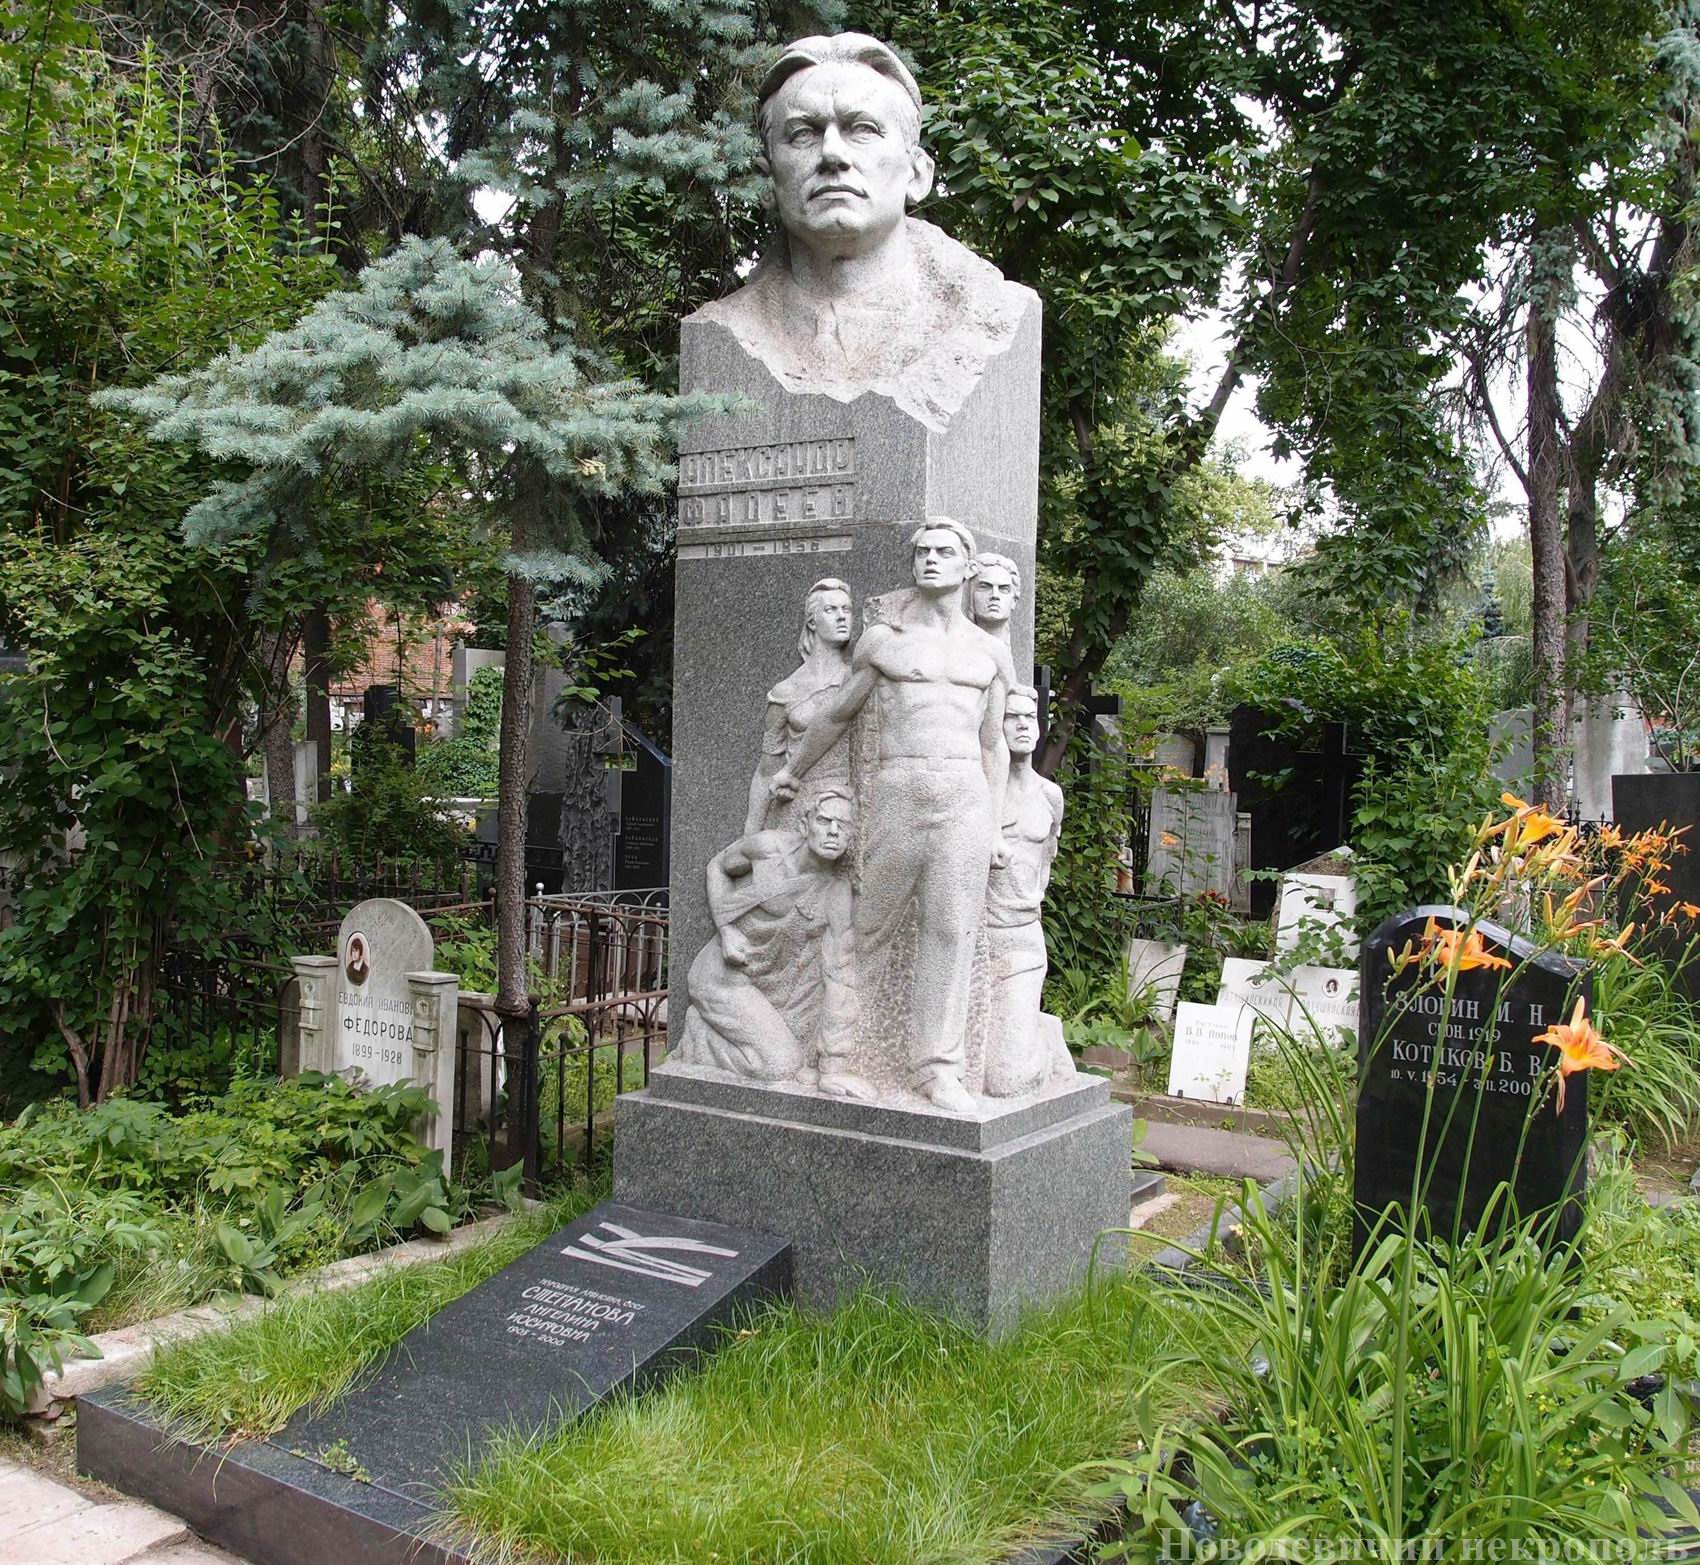 Памятник на могиле Фадеева А.А. (1901–1956), ск. Е.Рудаков, К.Биткин, арх. А.Котырев, на Новодевичьем кладбище (1–15–4). Нажмите левую кнопку мыши чтобы увидеть фрагмент памятника.